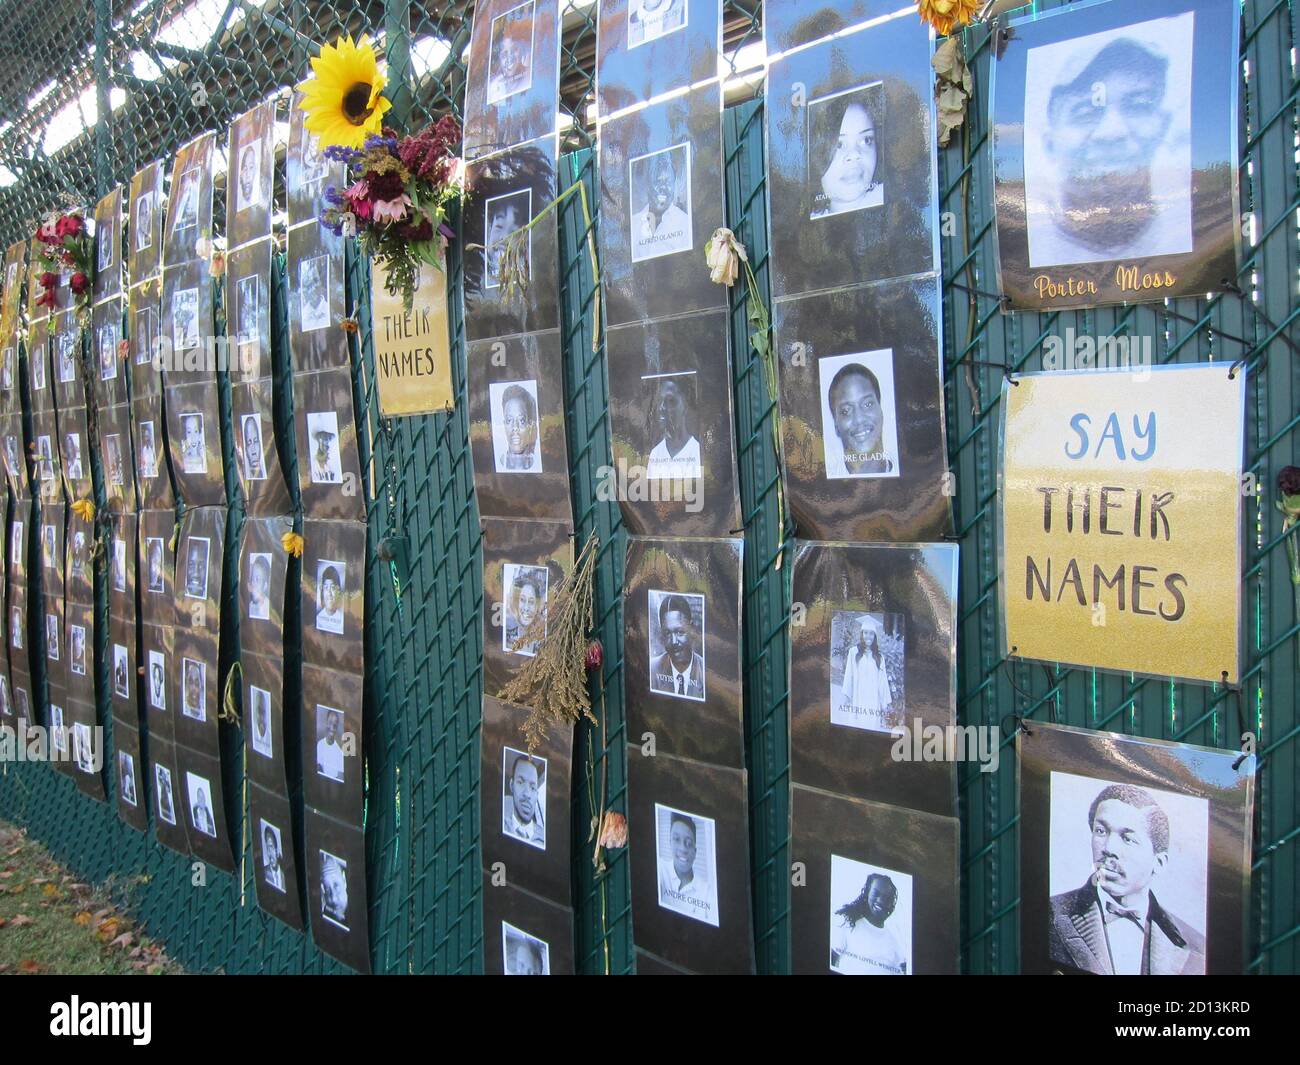 Cooperstown, NY / EE.UU. - 1 de octubre de 2020: 'Diga sus nombres' vidas negras asunto memorial foto exhibición de víctimas negras de la violencia blanca en el norte del estado de Nueva York Foto de stock